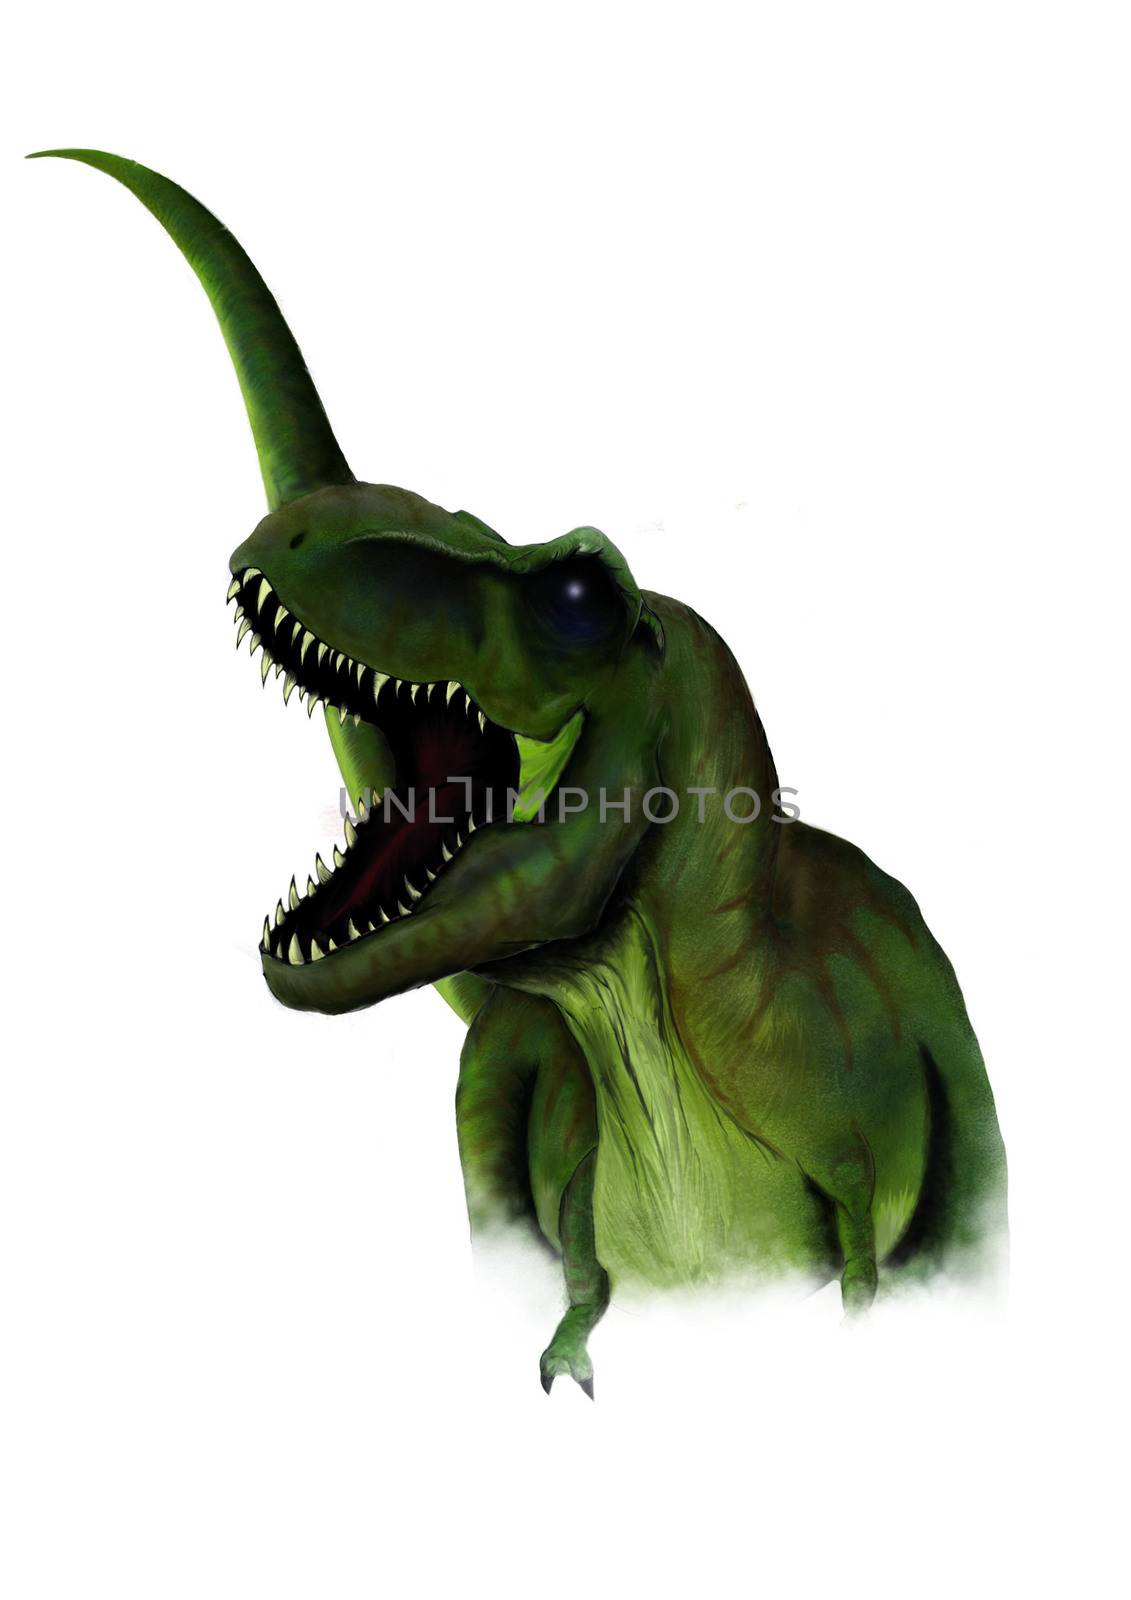 sketch of a cartoon dinosaur in illustartion by dean